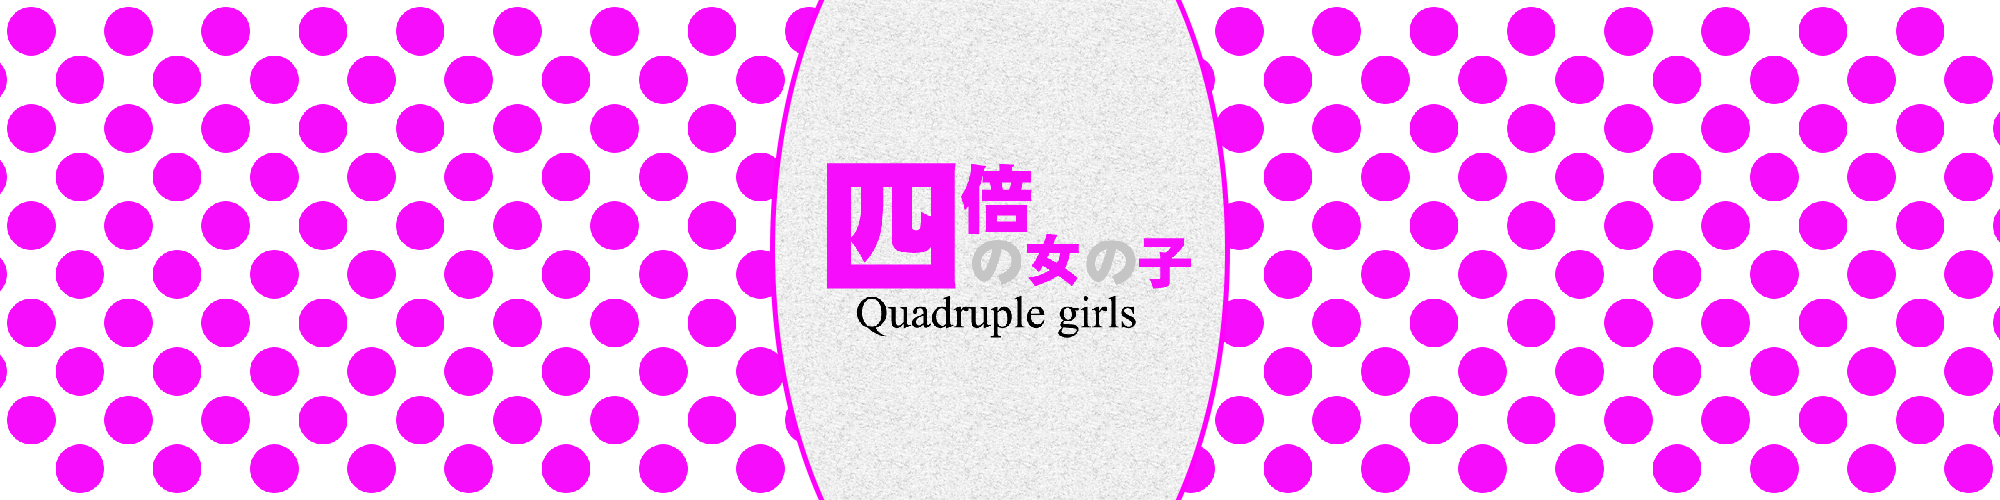 Quadruple Girls